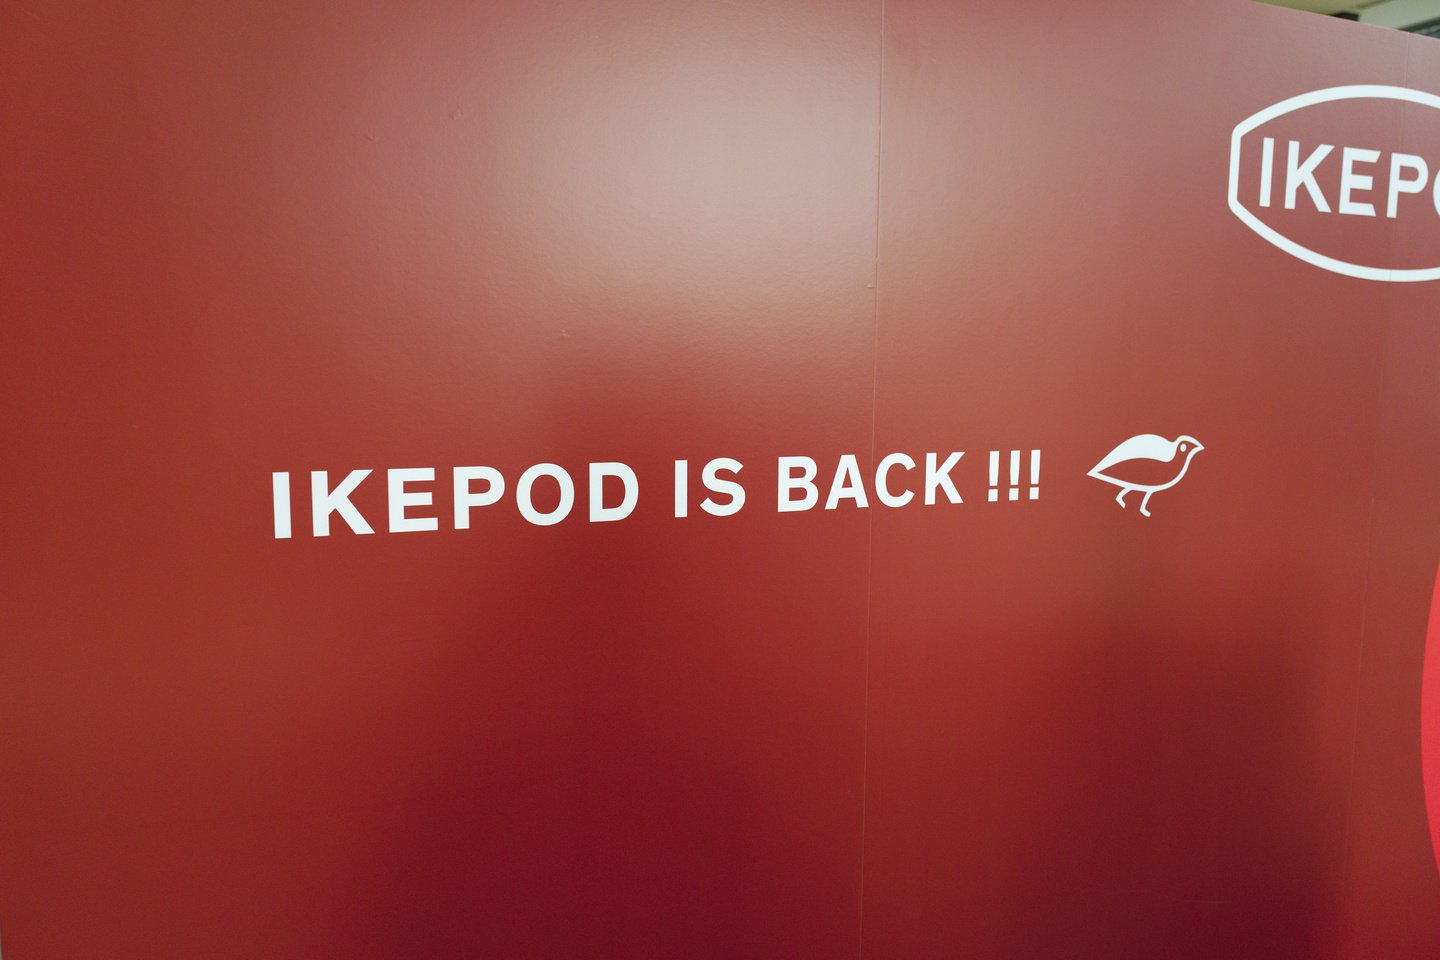 IKEPOD IS BACK!! の個人的理解